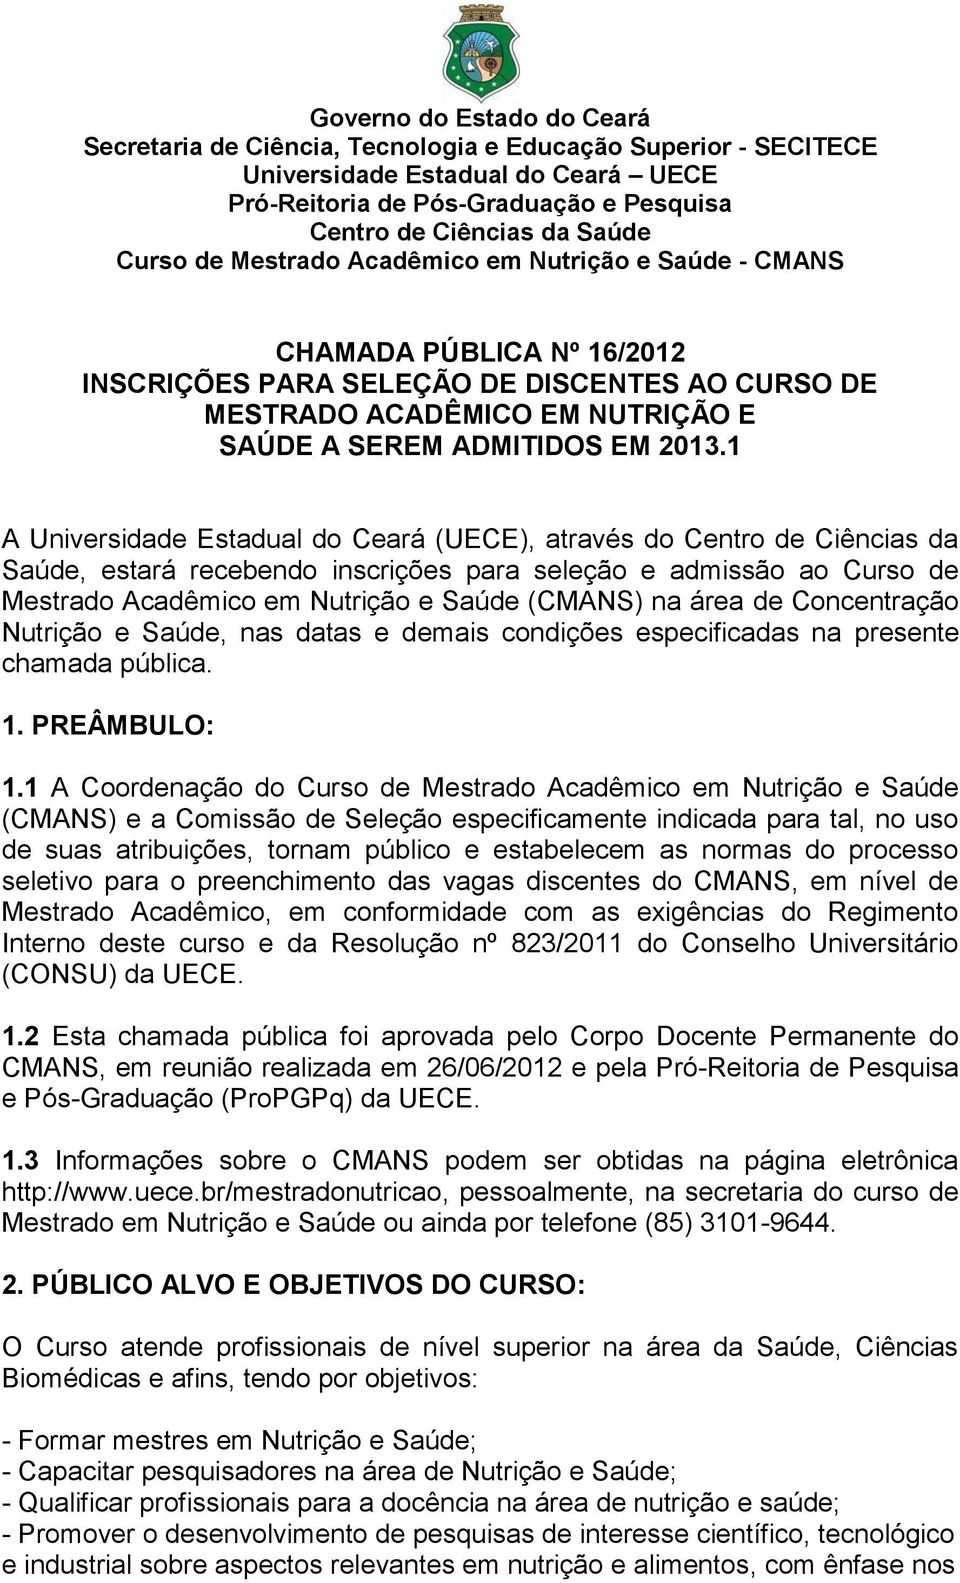 1 A Universidade Estadual do Ceará (UECE), através do Centro de Ciências da Saúde, estará recebendo inscrições para seleção e admissão ao Curso de Mestrado Acadêmico em Nutrição e Saúde (CMANS) na